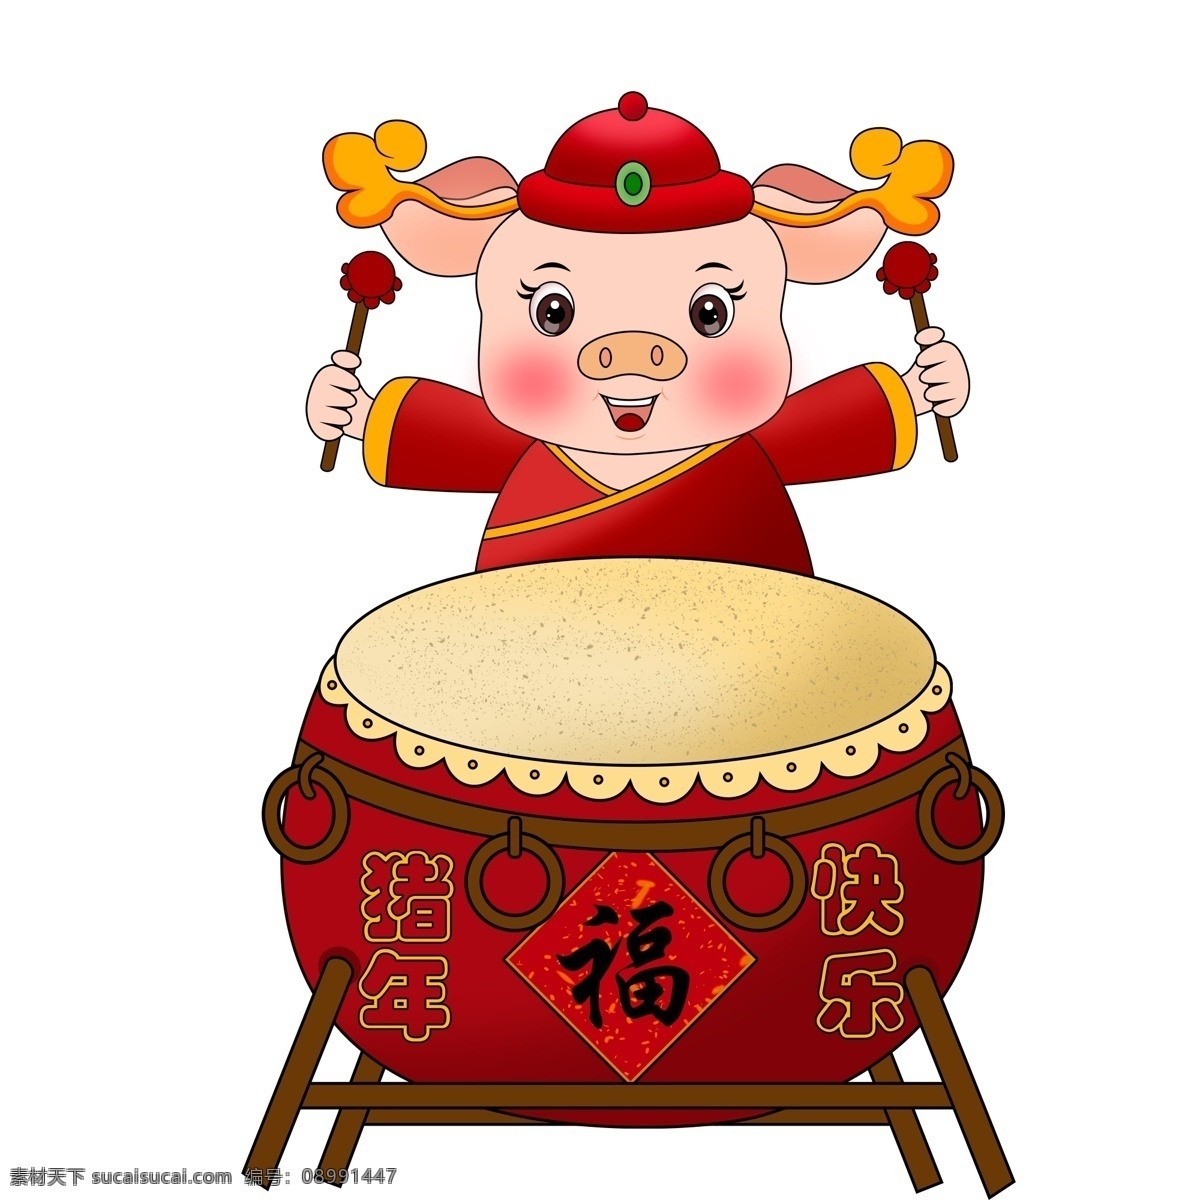 猪年 喜庆 大气 大鼓 猪 春节元素 卡通 彩绘 红色 2019年 新年 小猪形象 猪年形象 小猪设计